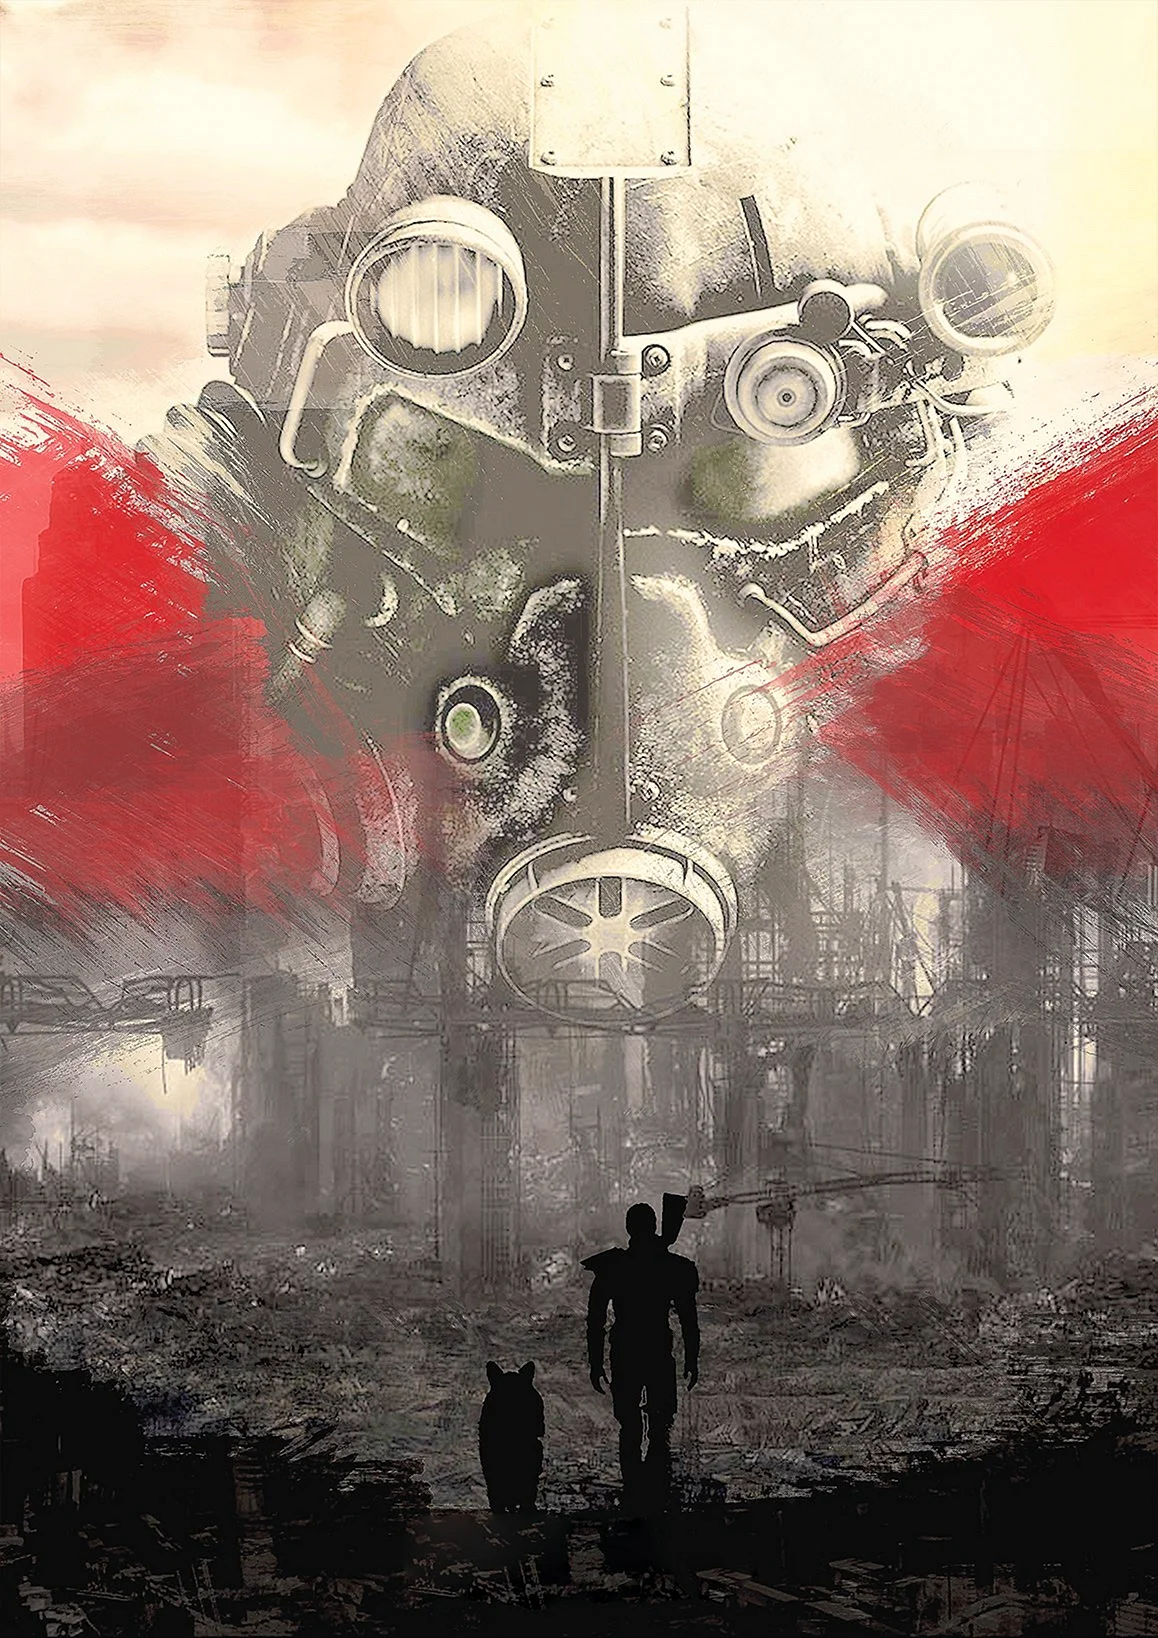 Постер Fallout 4